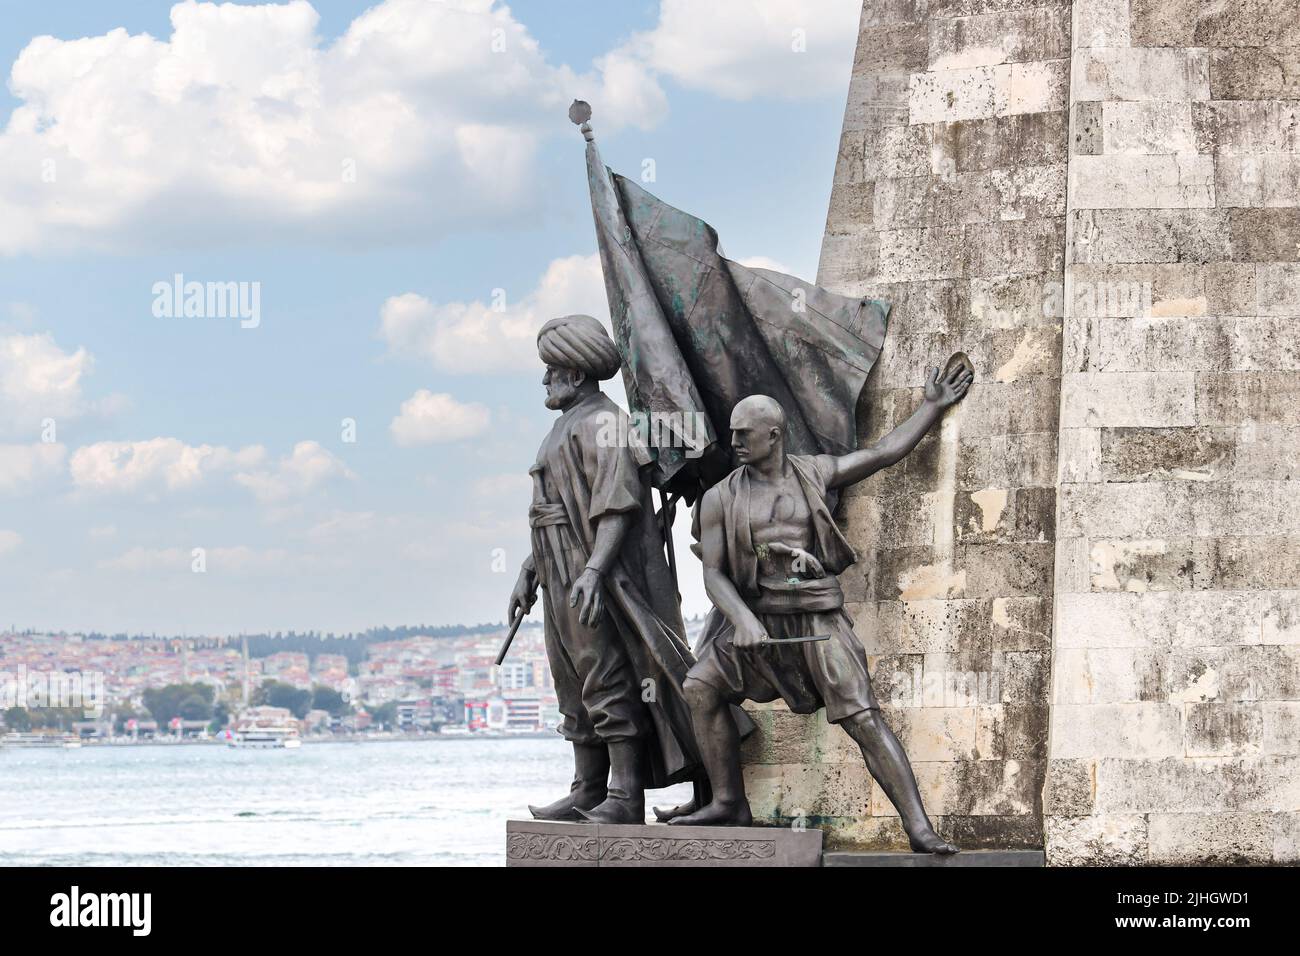 İstanbul, Turchia - Settembre 09 2021: Statua del comandante della marina dell'Impero Ottomano Barbaros Hayreddin Pasha a Beşiktaş Istanbul Turchia. Foto Stock